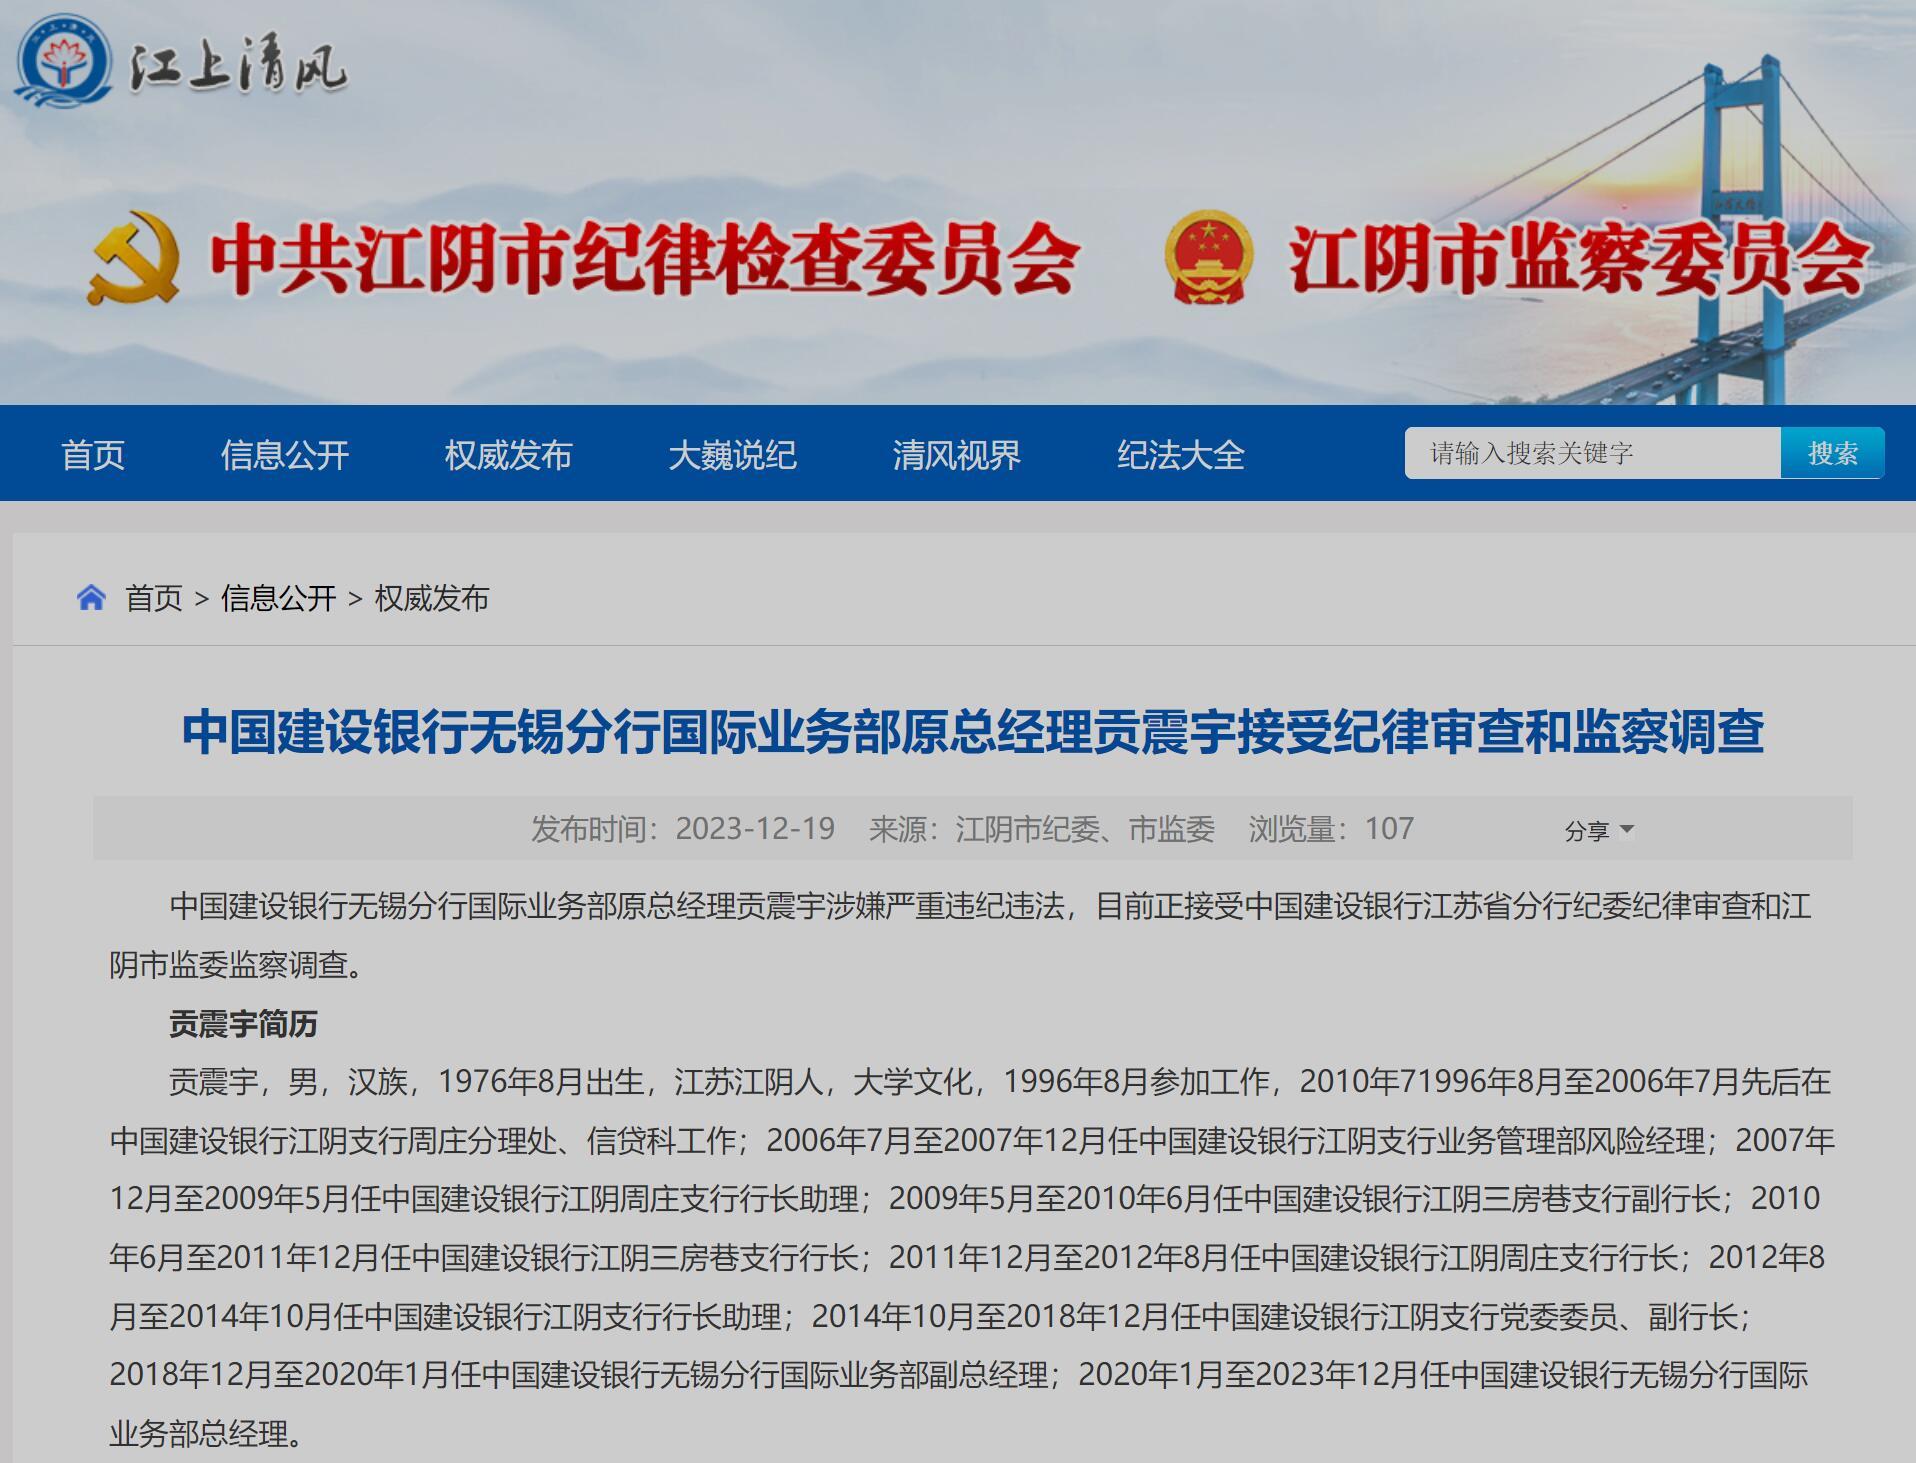 中国建设银行无锡分行国际业务部原总经理贡震宇接受纪律审查和监察调查